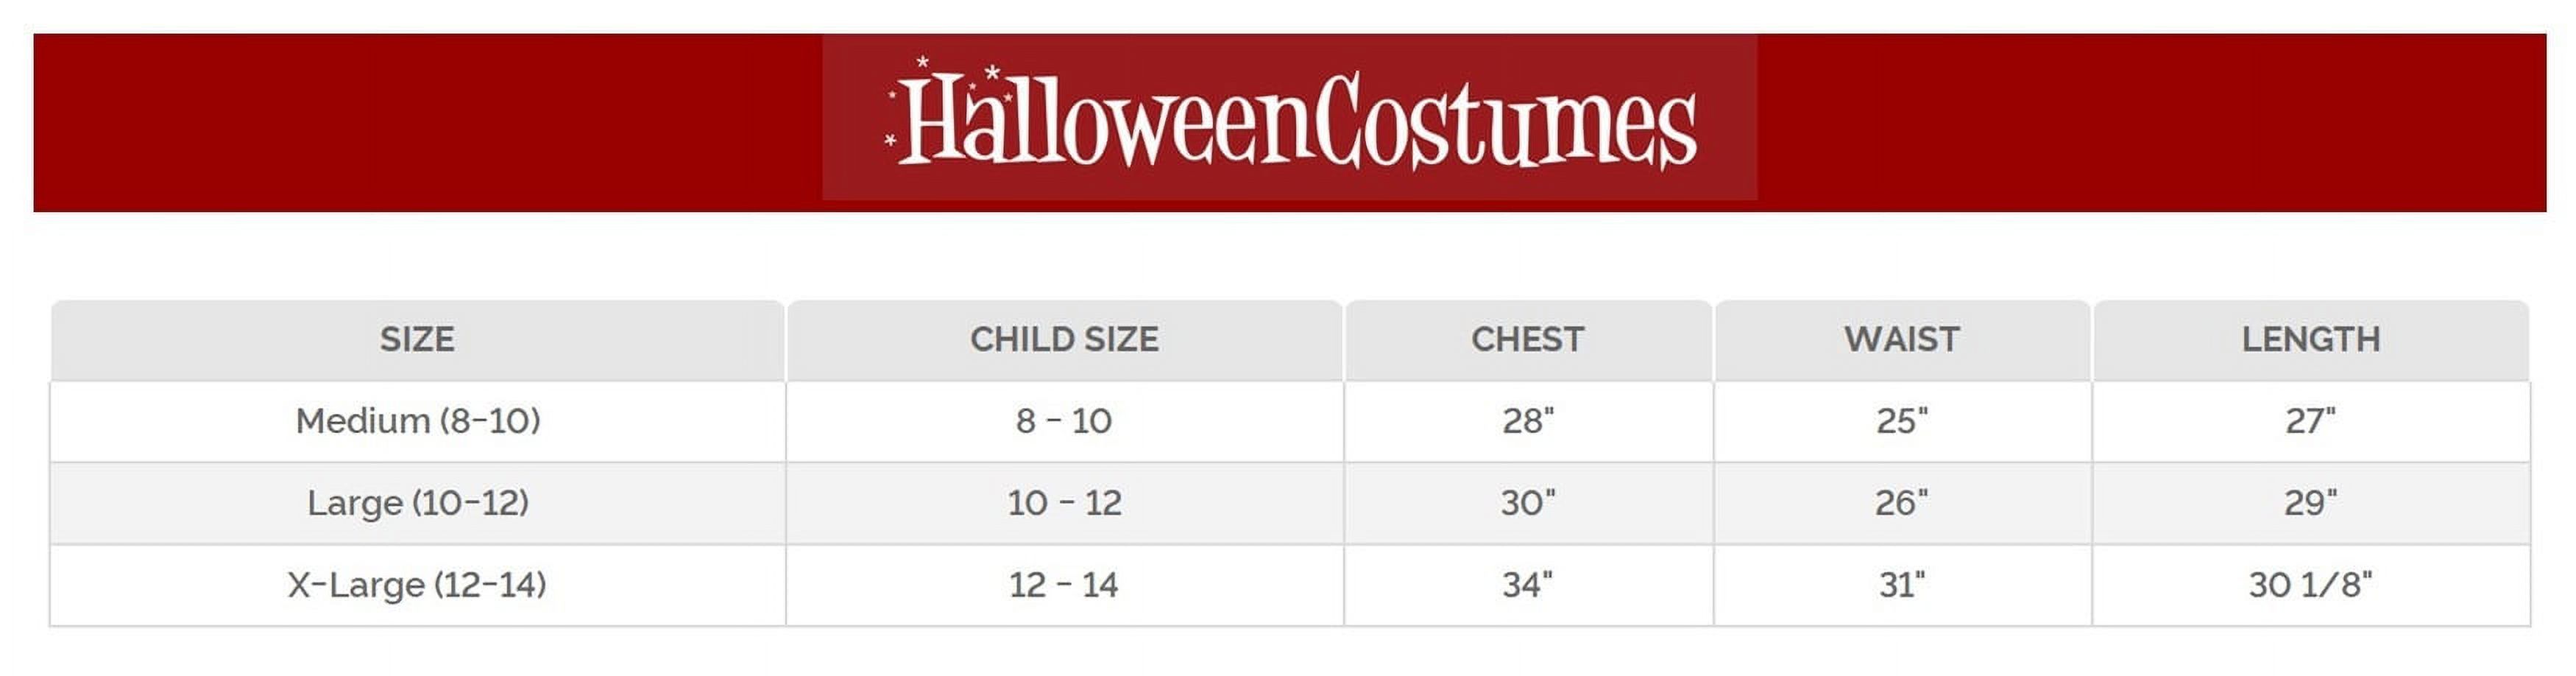 Halloween Alps Girl's Costume - Walmart.com